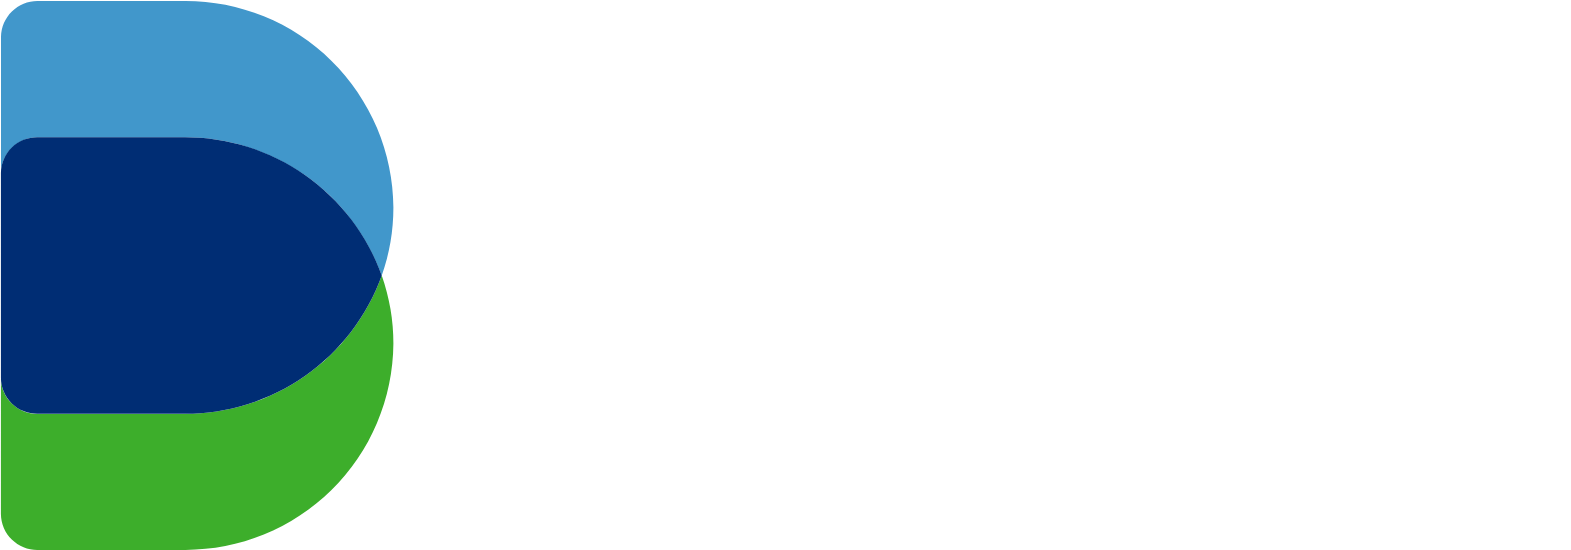 Dukhan Bank logo large for dark backgrounds (transparent PNG)